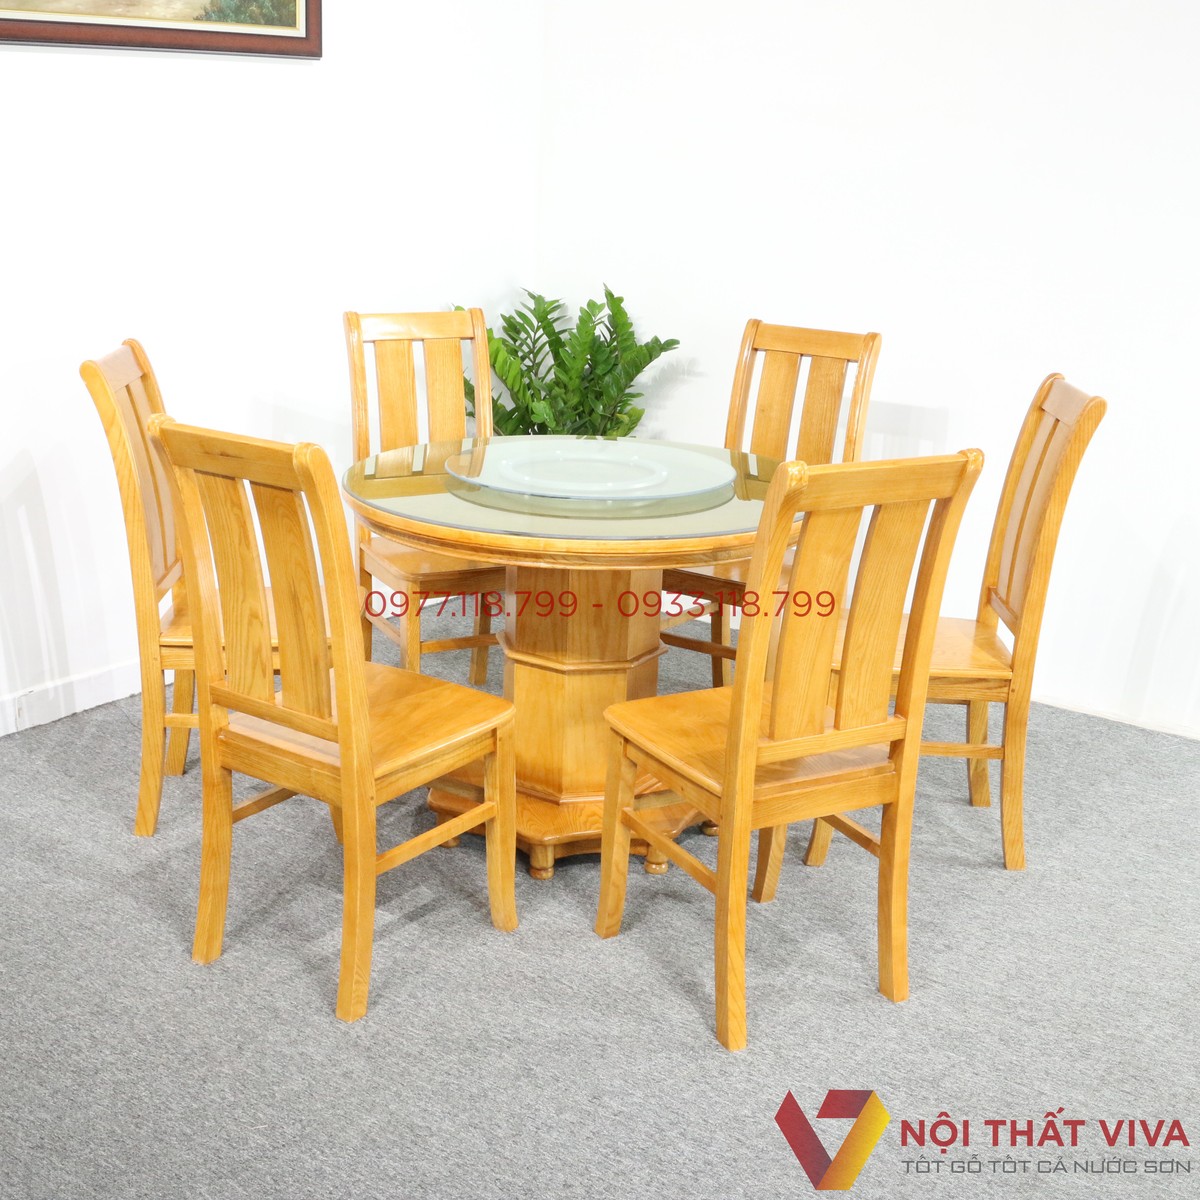 Bàn ăn tròn 8 ghế hiện đại – sản phẩm được nhiều gia đình Việt chuộng